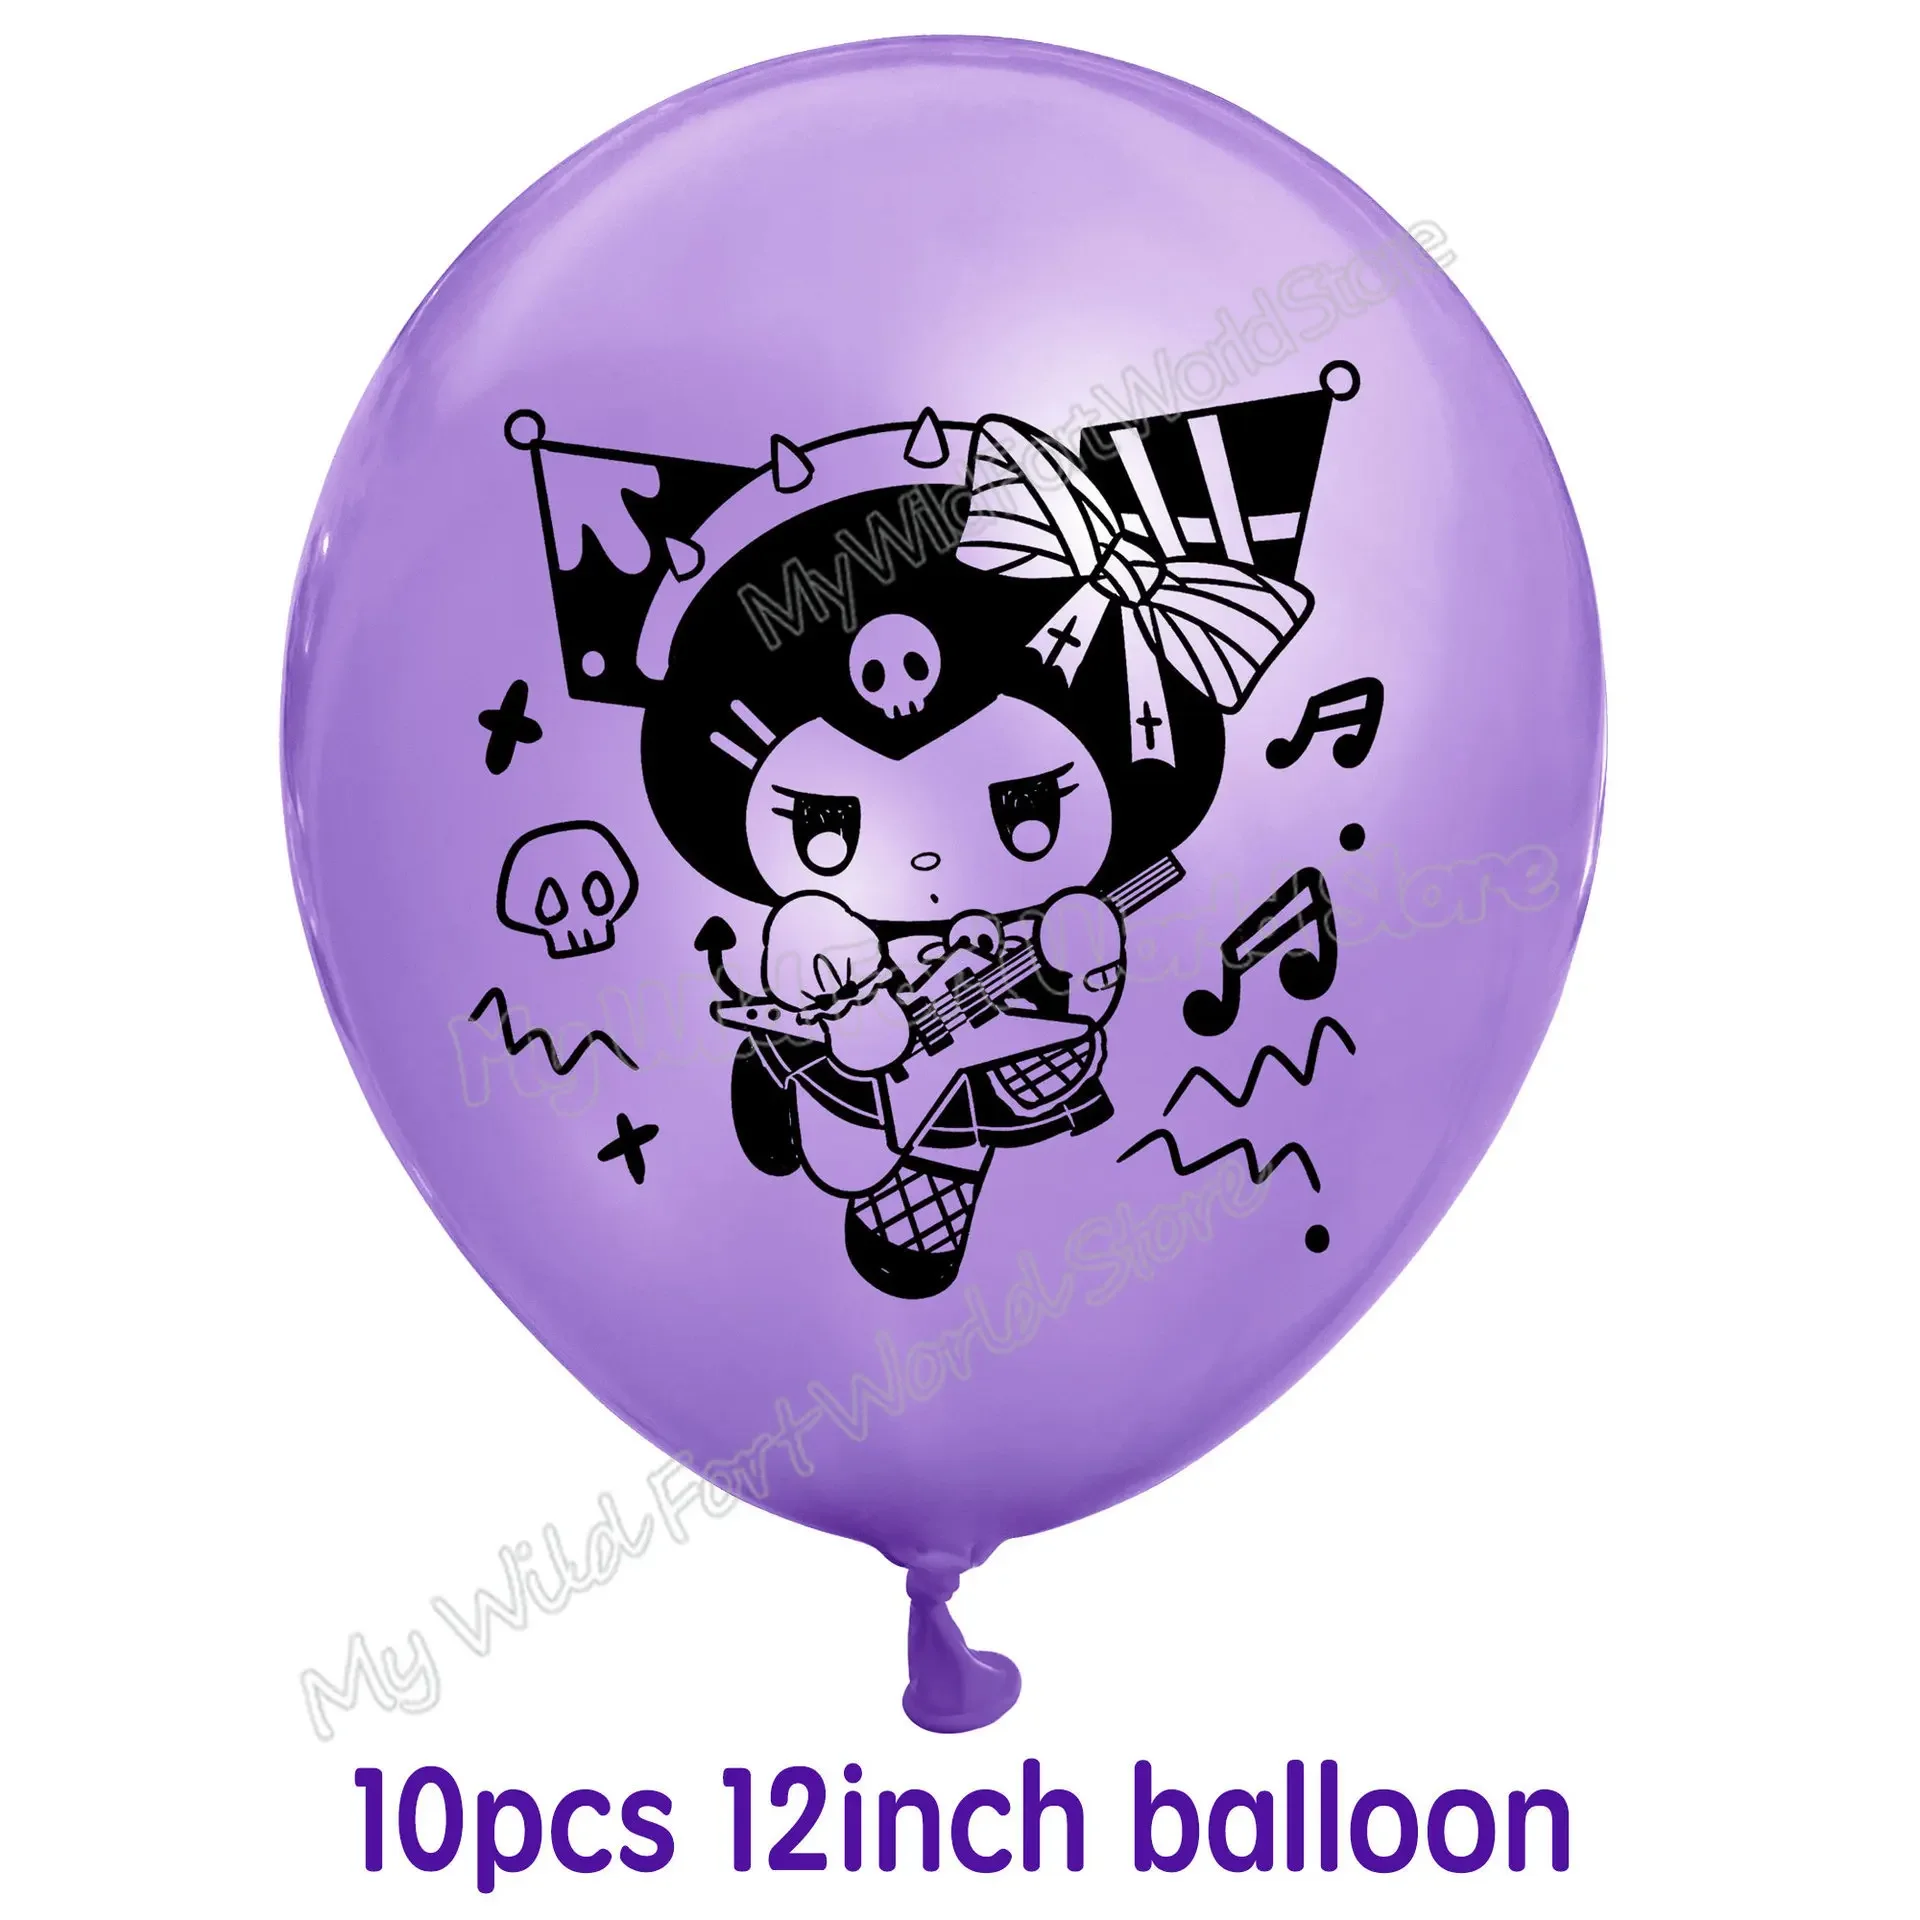 Sanrios Kuromi Meisje Gelukkige Verjaardag Decoratie Baby Shower Roze Feestartikelen Paarse Ballons Cupcake Topper Cup Borden Rietjes